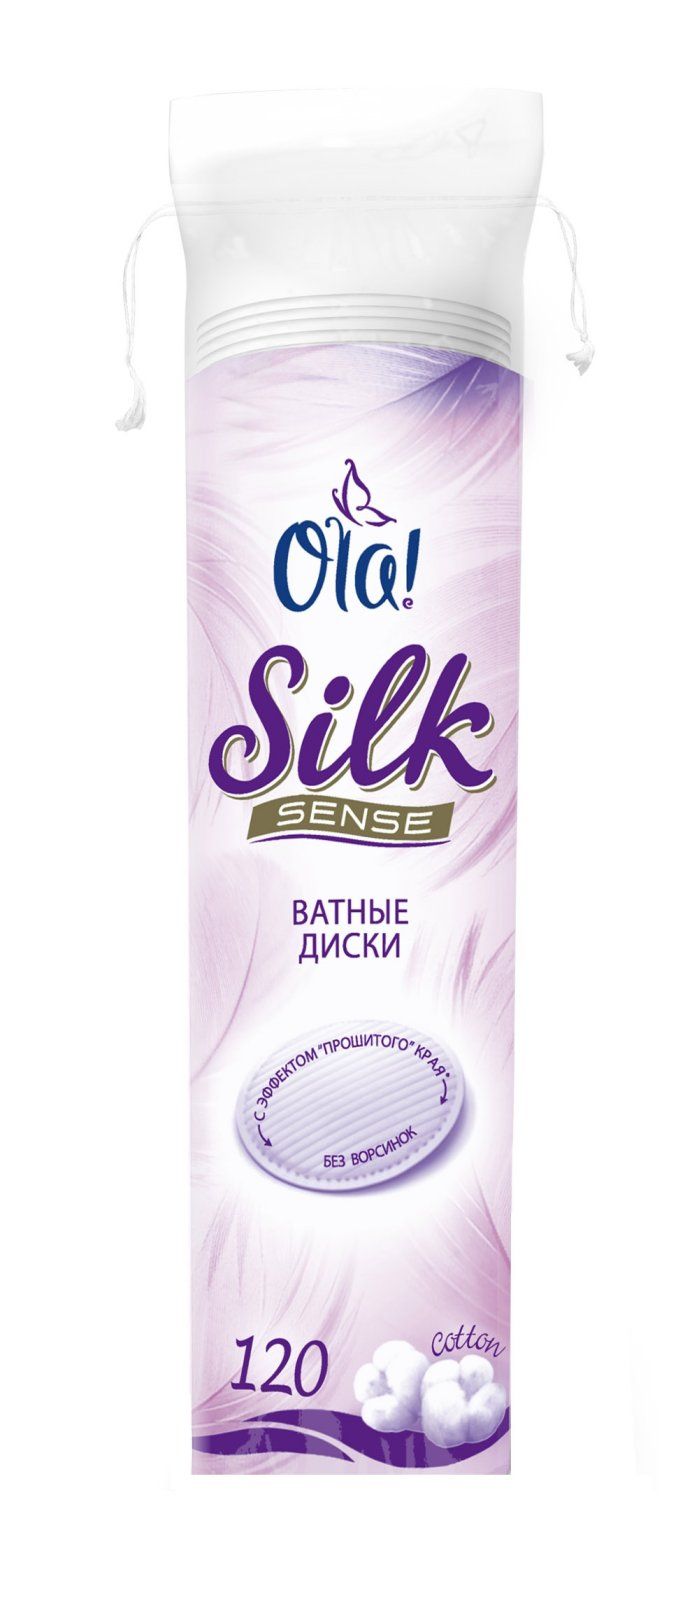 фото упаковки Ola! Silk Sense Ватные диски